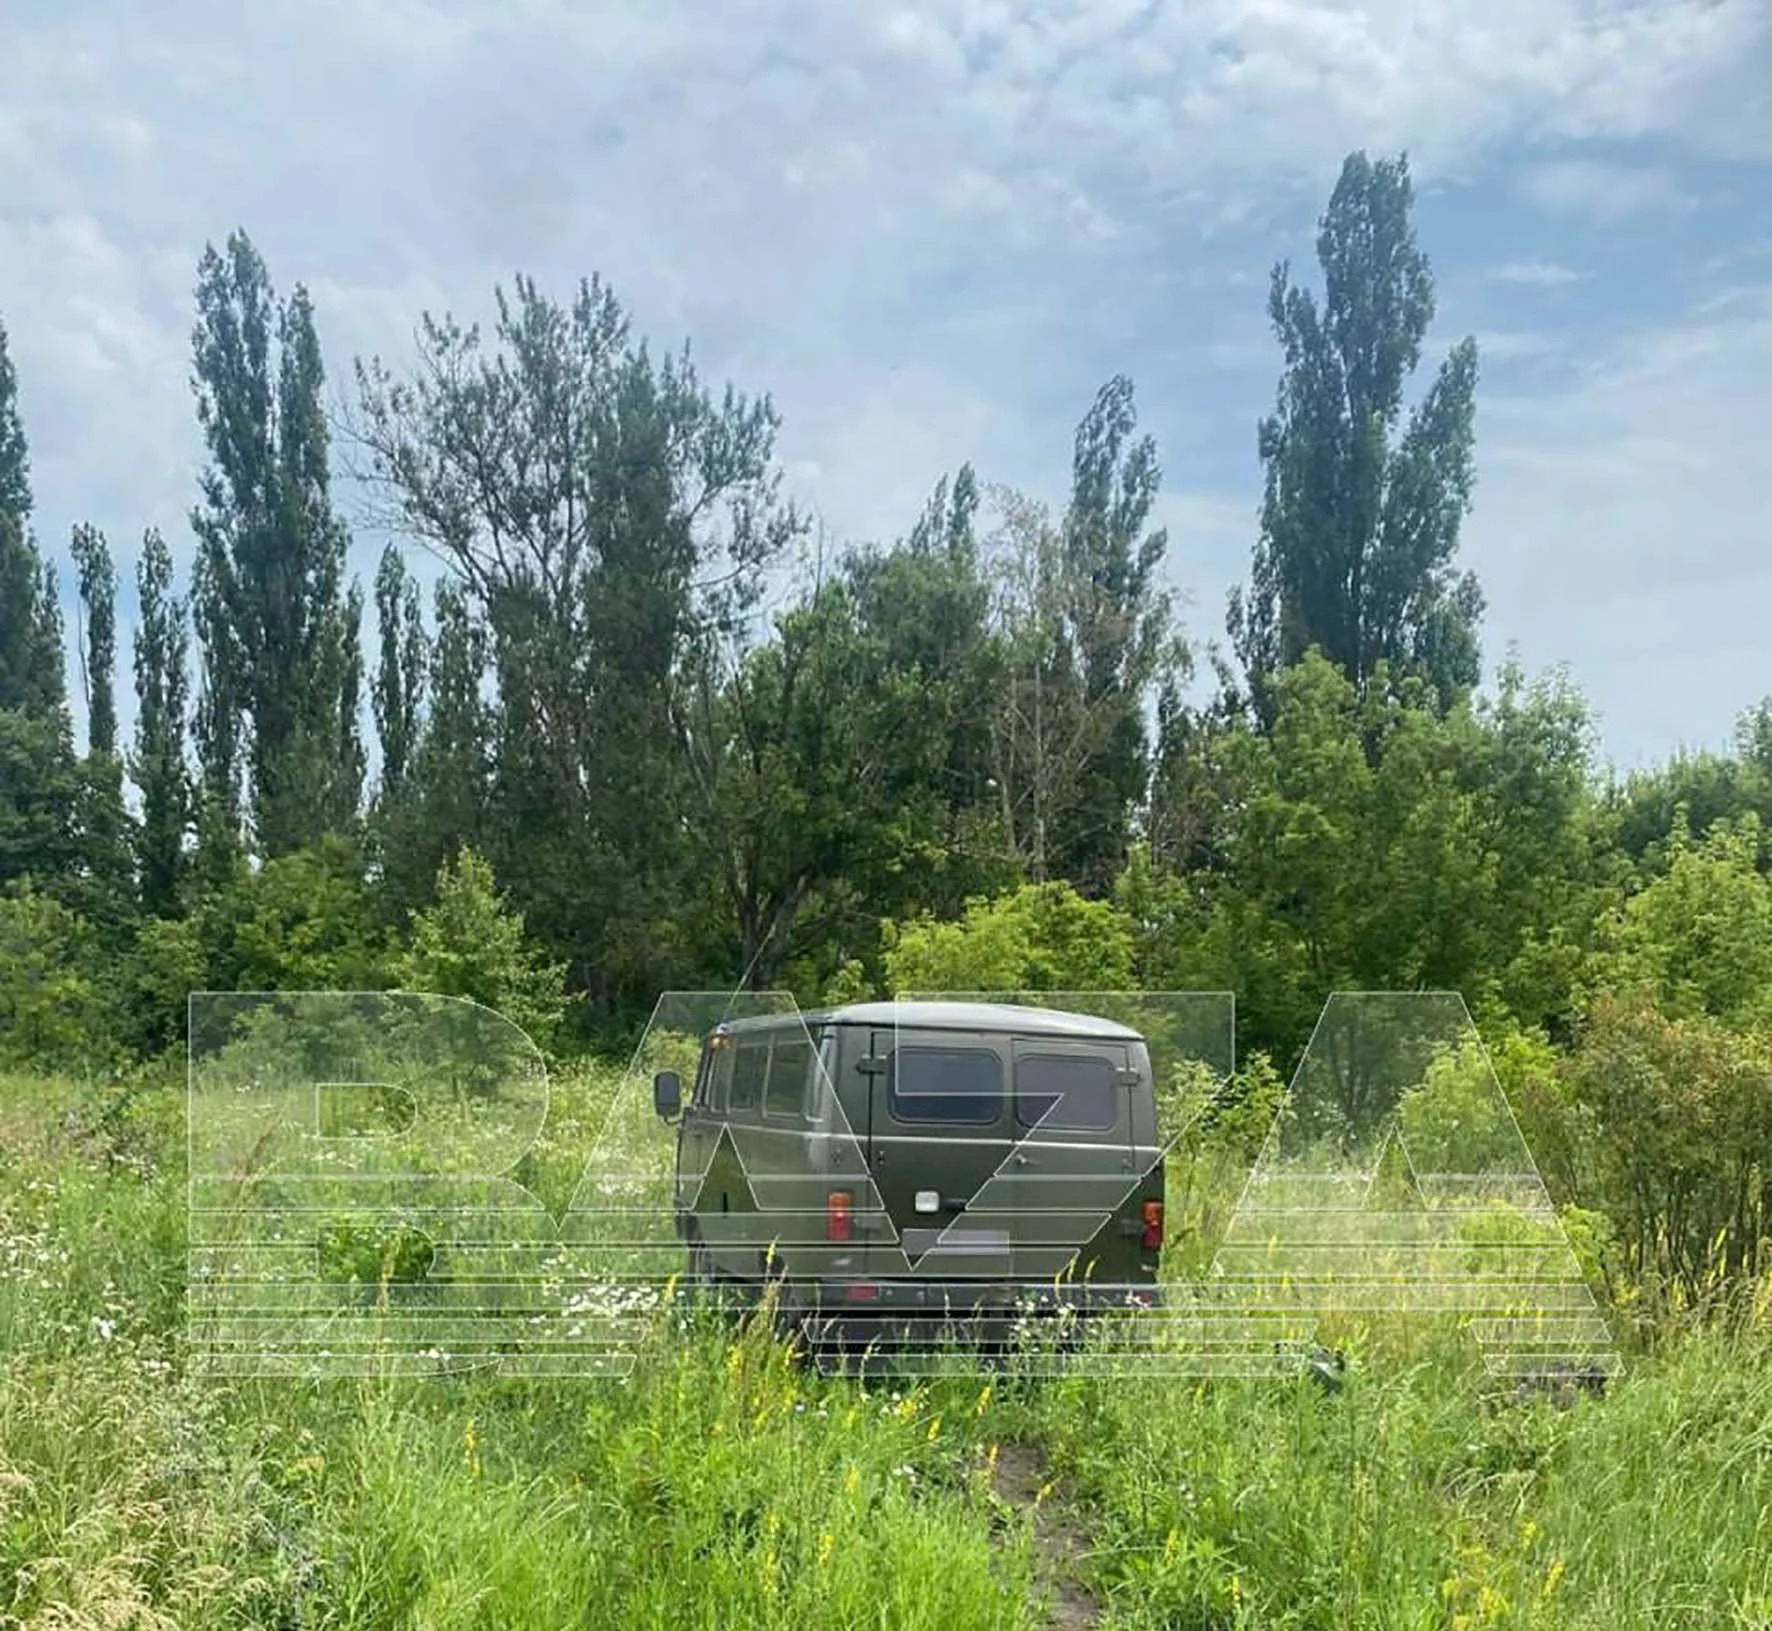 Die Leichen wurden an einer russischen Autobahn gefunden